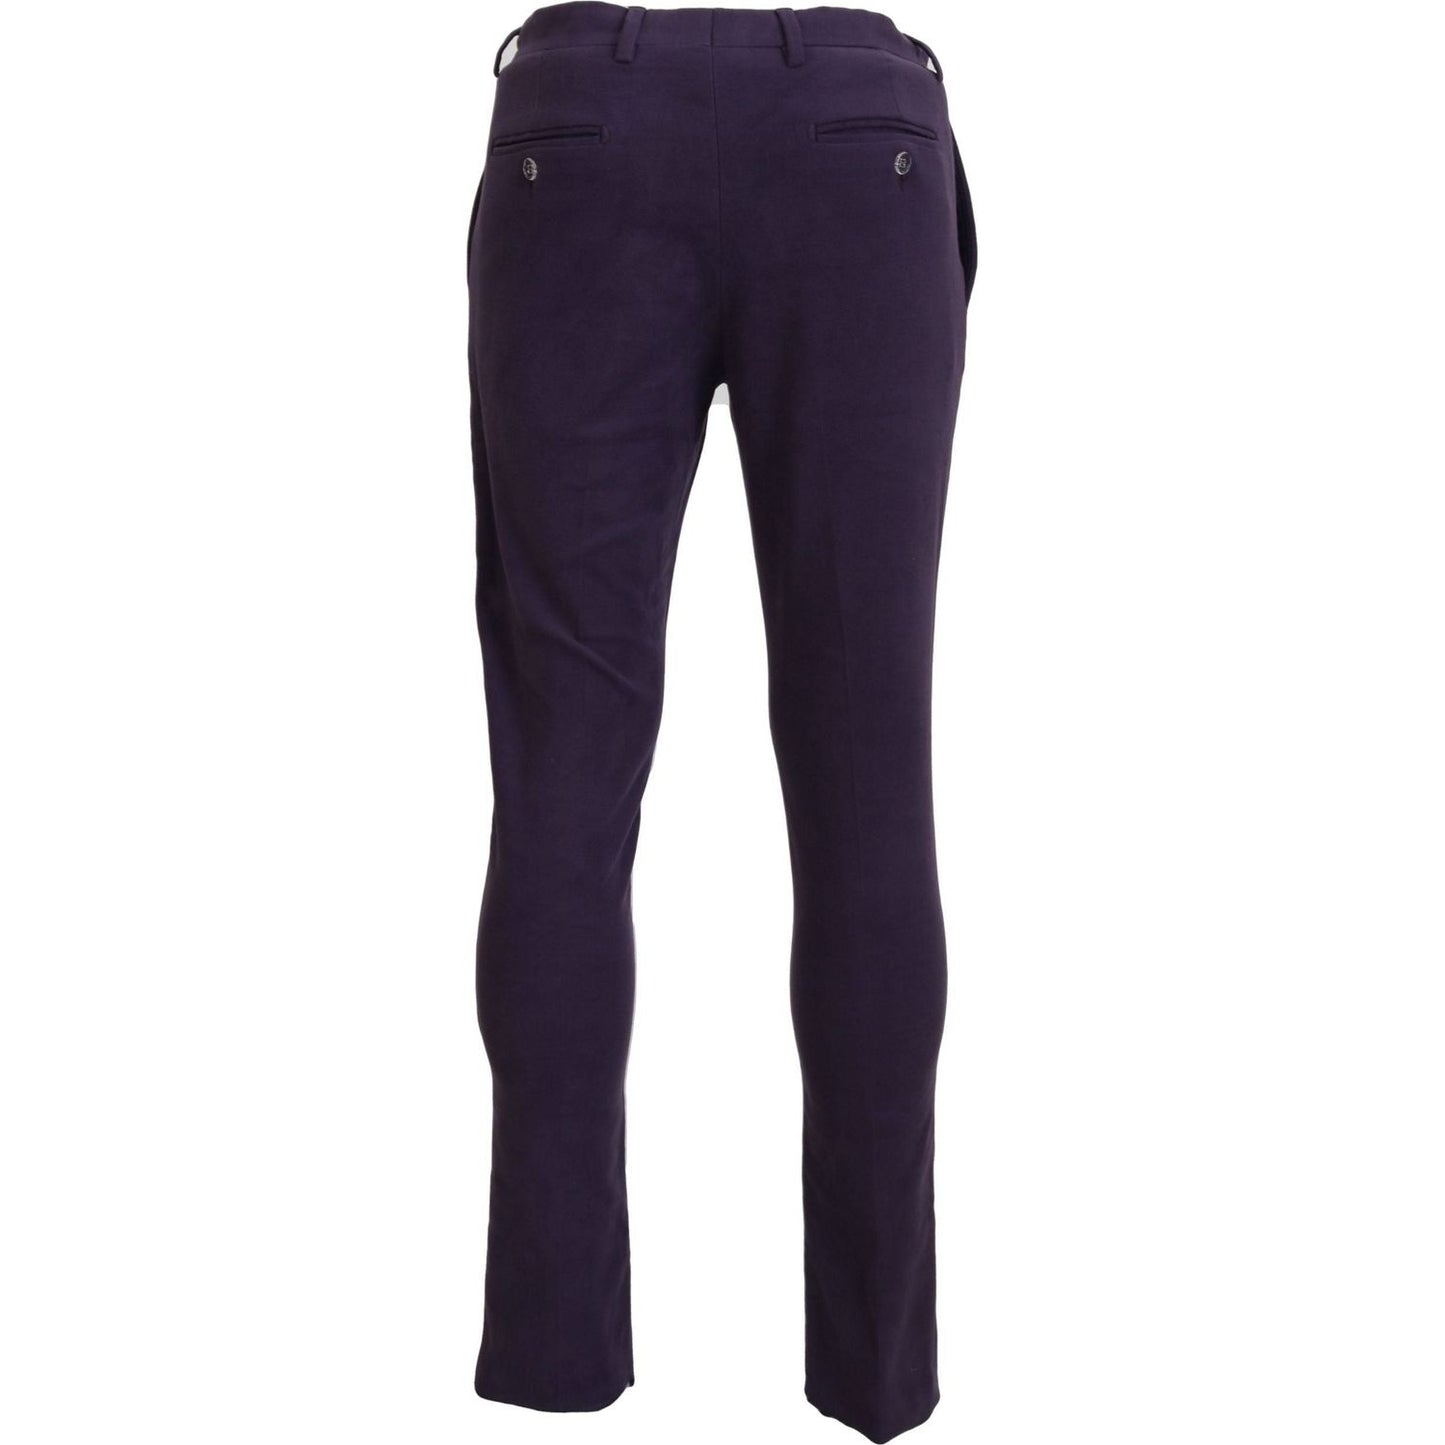 BENCIVENGA Elegant Purple Cotton Trousers purple-pure-cotton-tapered-mens-pants